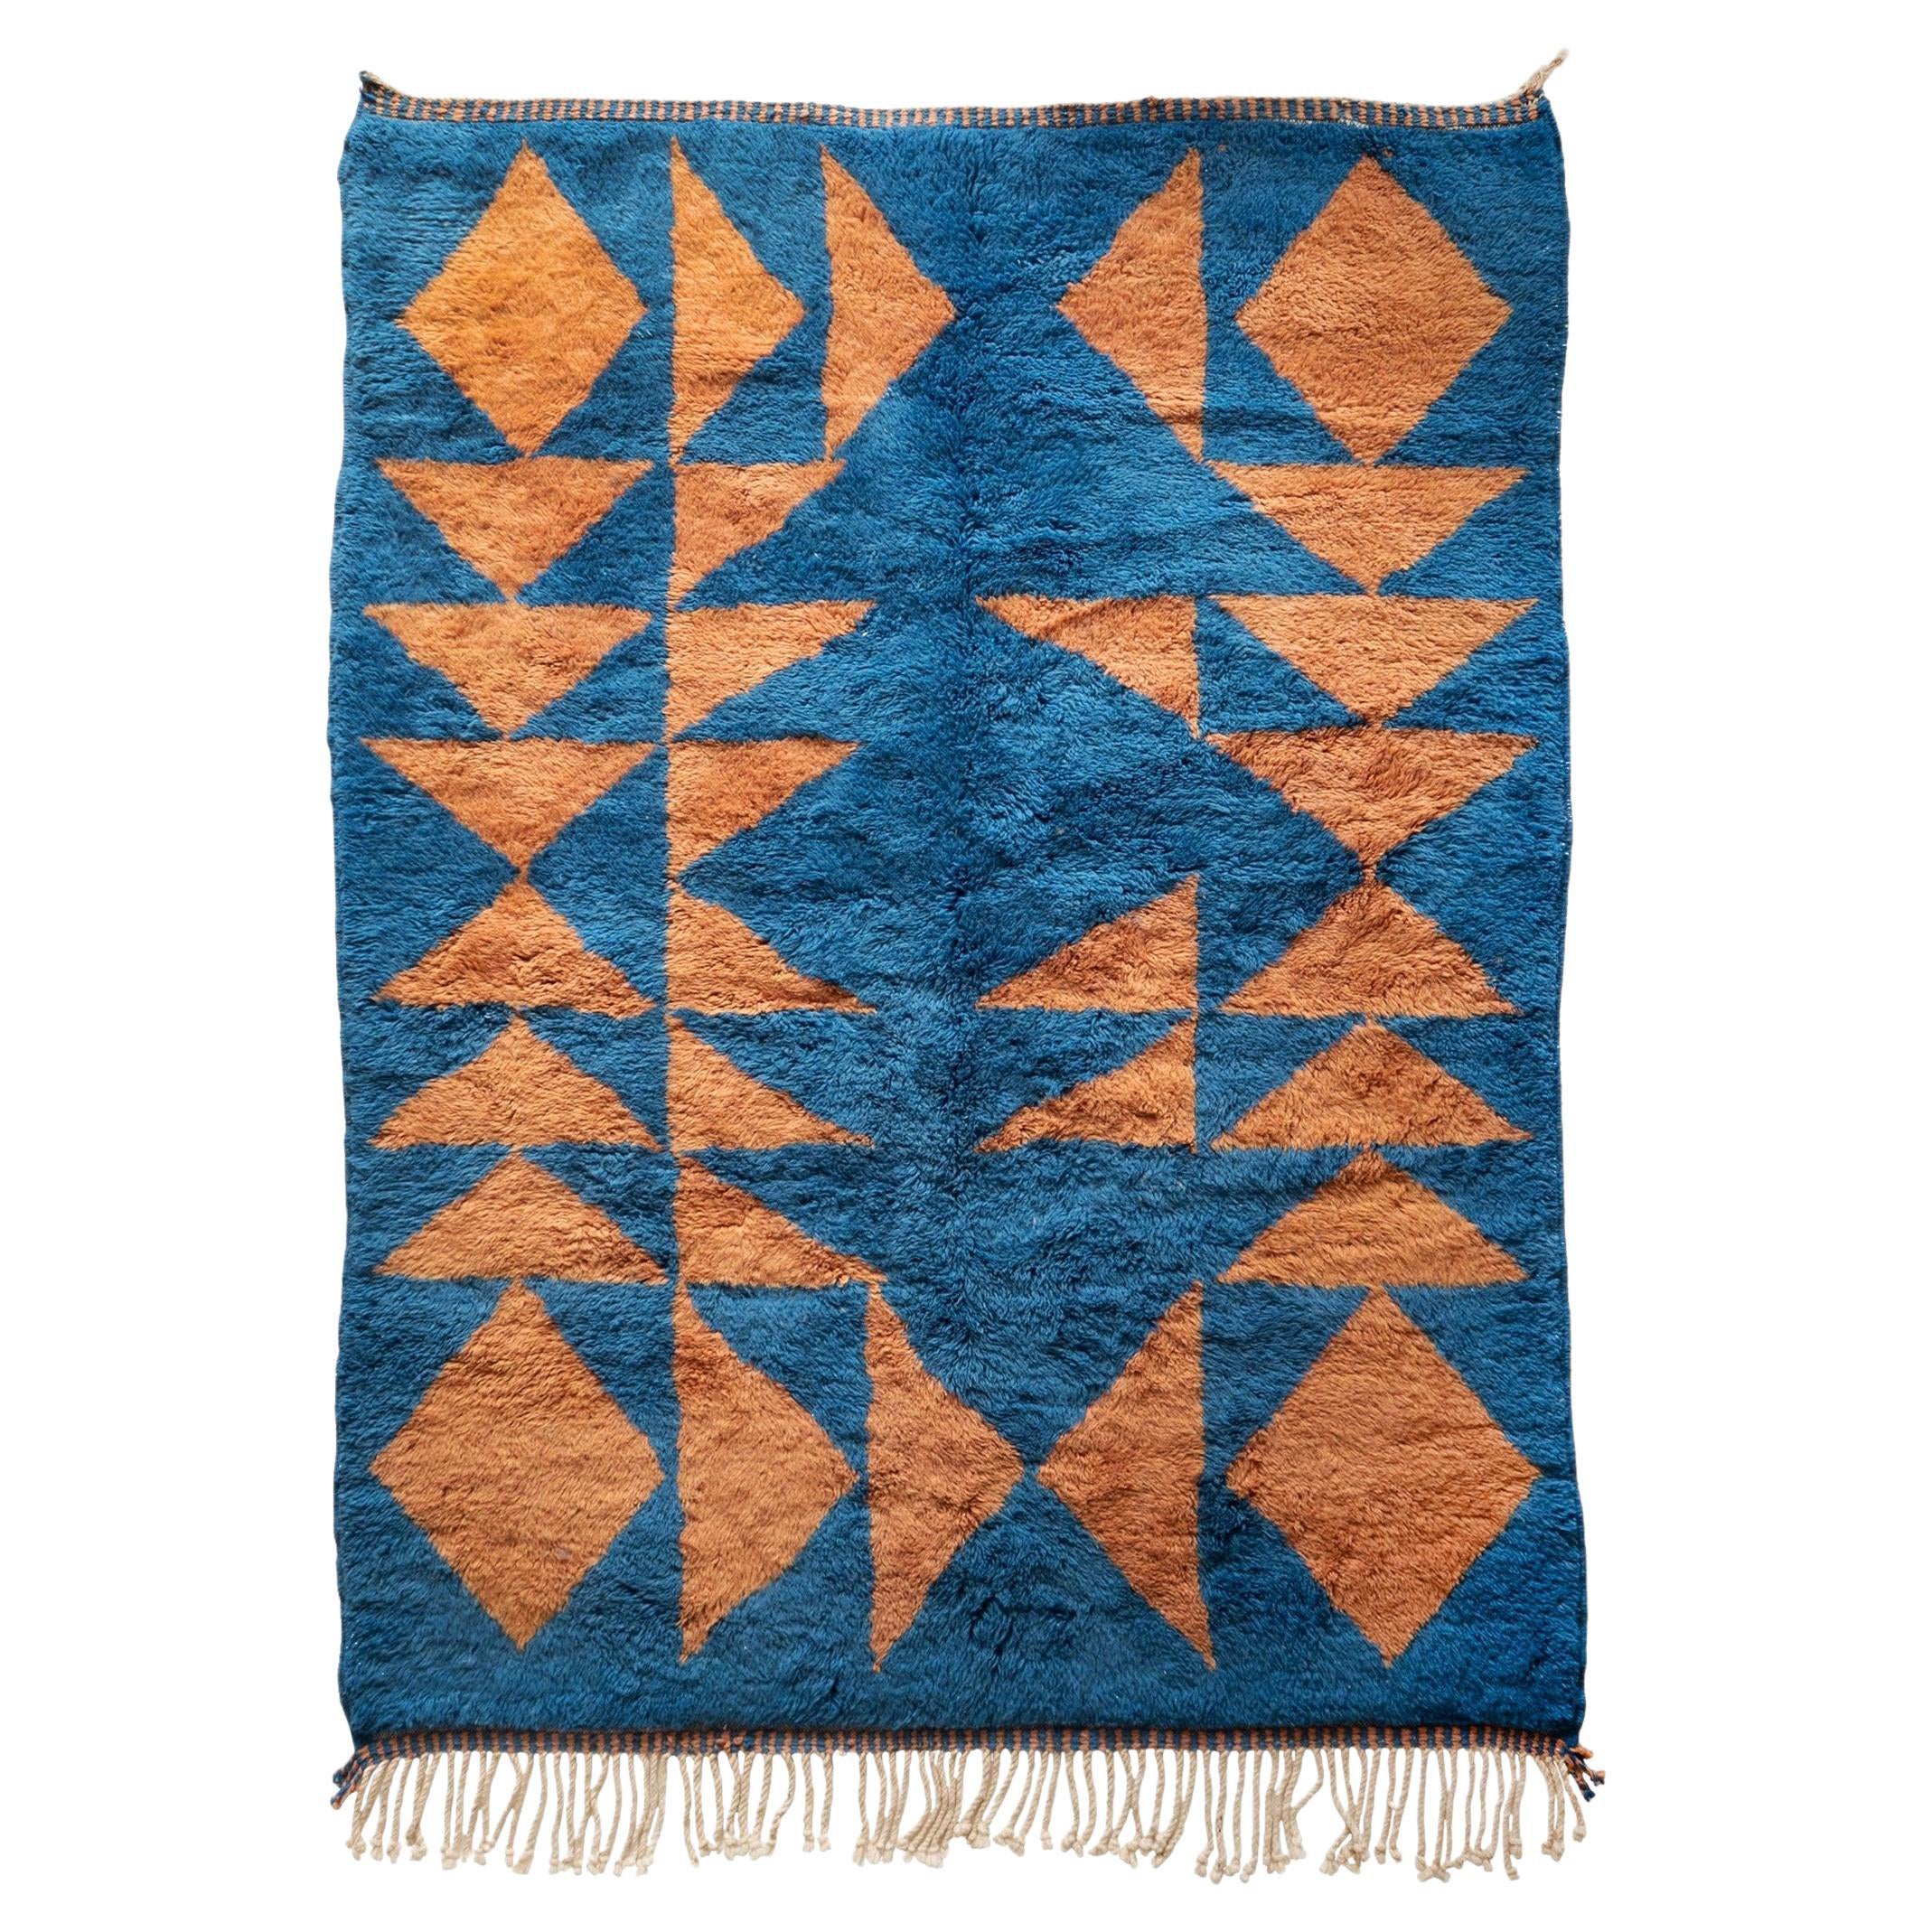 Marokkanischer Beni Mrirt Teppich 6'x9', Blaue Farbe Dreiecksmuster Teppich, CUSTOM MADE